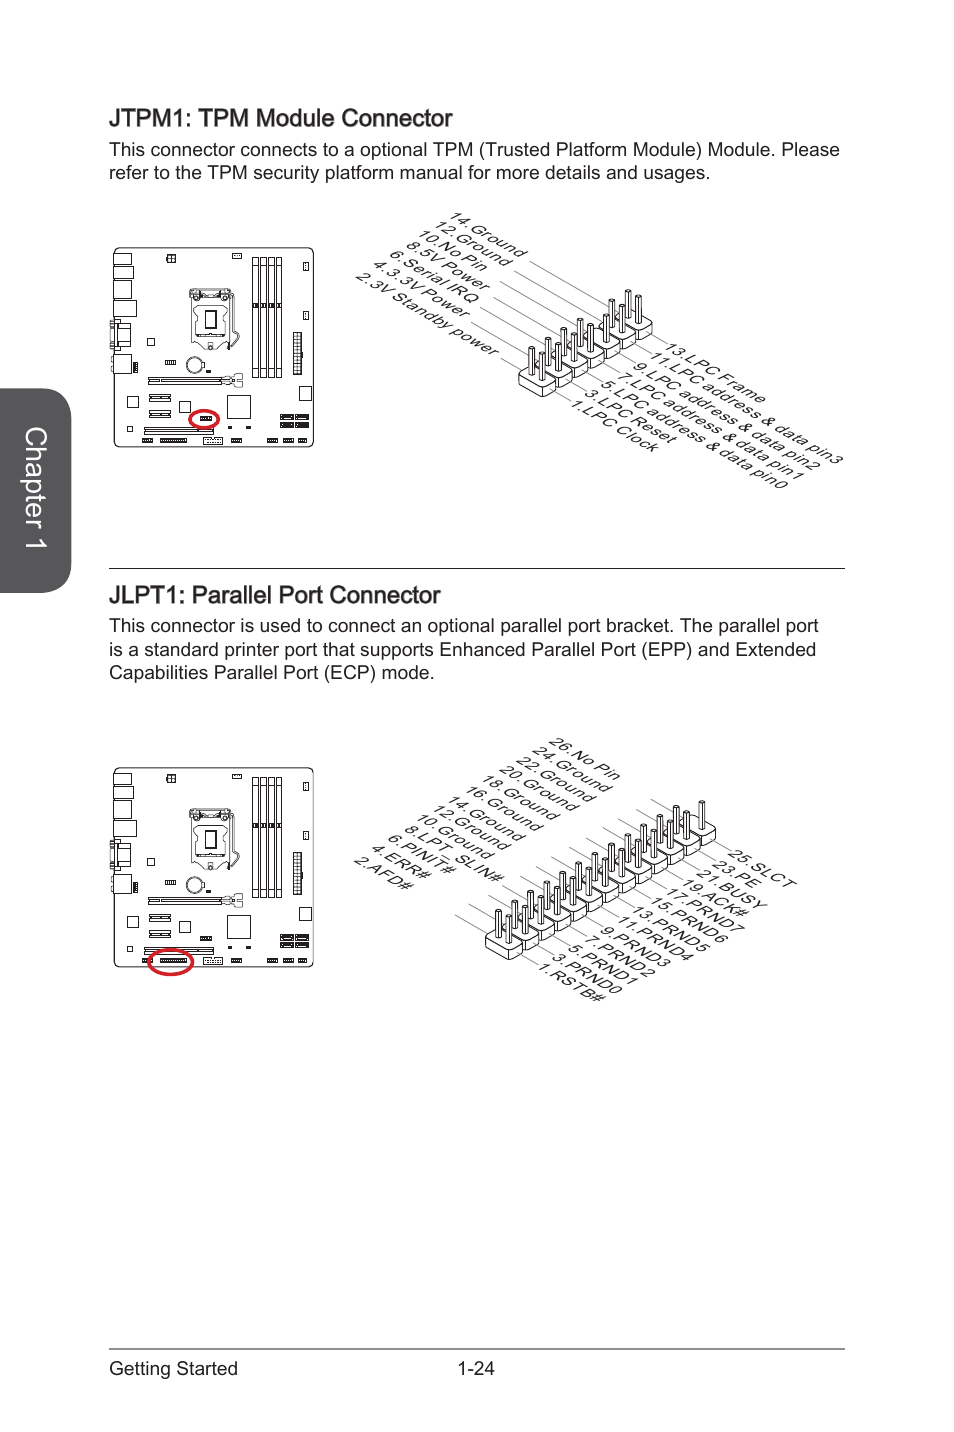 Jtpm1: tpm module connector, Jlpt1: parallel port connector, Jlpt1